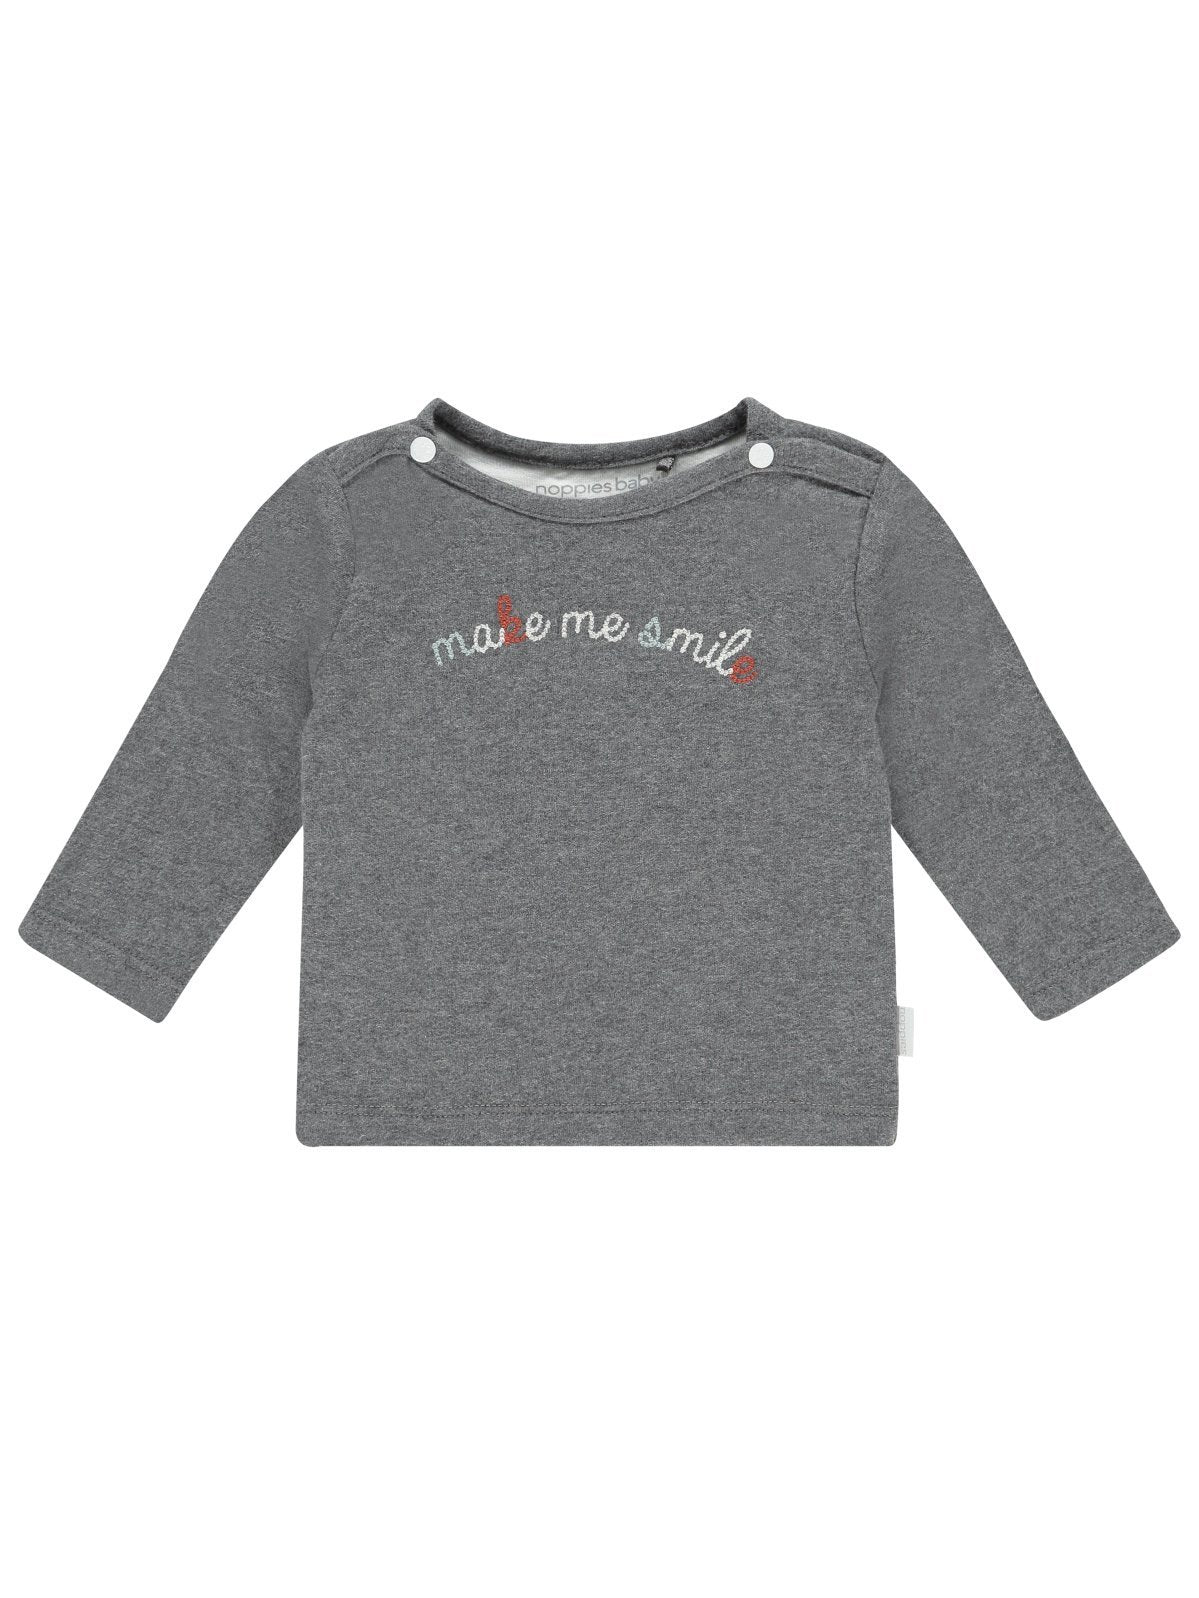 Grey "Make Me Smile" top - Organic Cotton - Top / T-shirt - Noppies